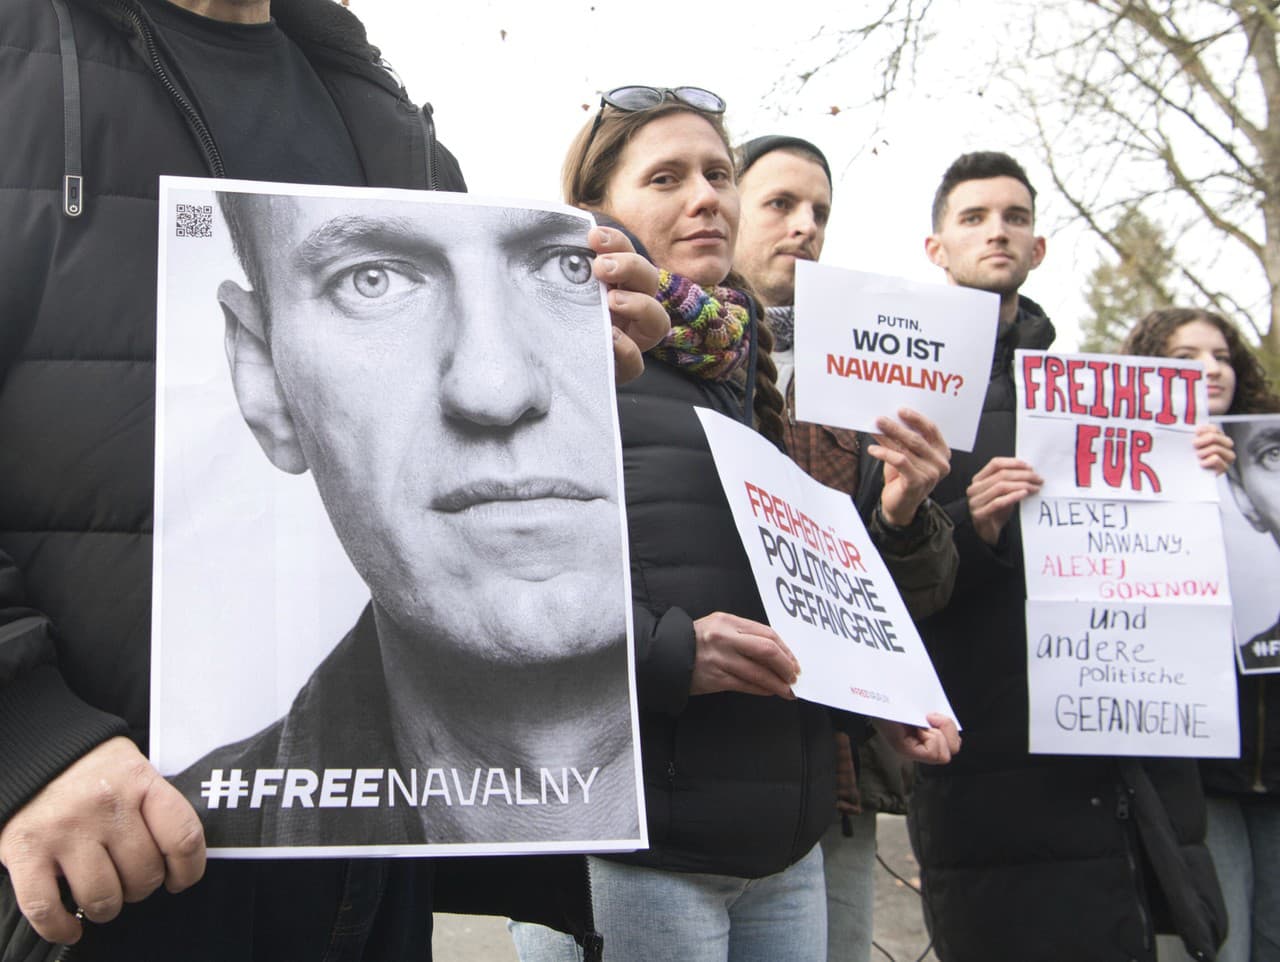 Demonštranti sa zhromažďujú pred domom ruského veľvyslanca Sergeja Nečajeva a požadujú slobodu pre všetkých politických väzňov v Rusku